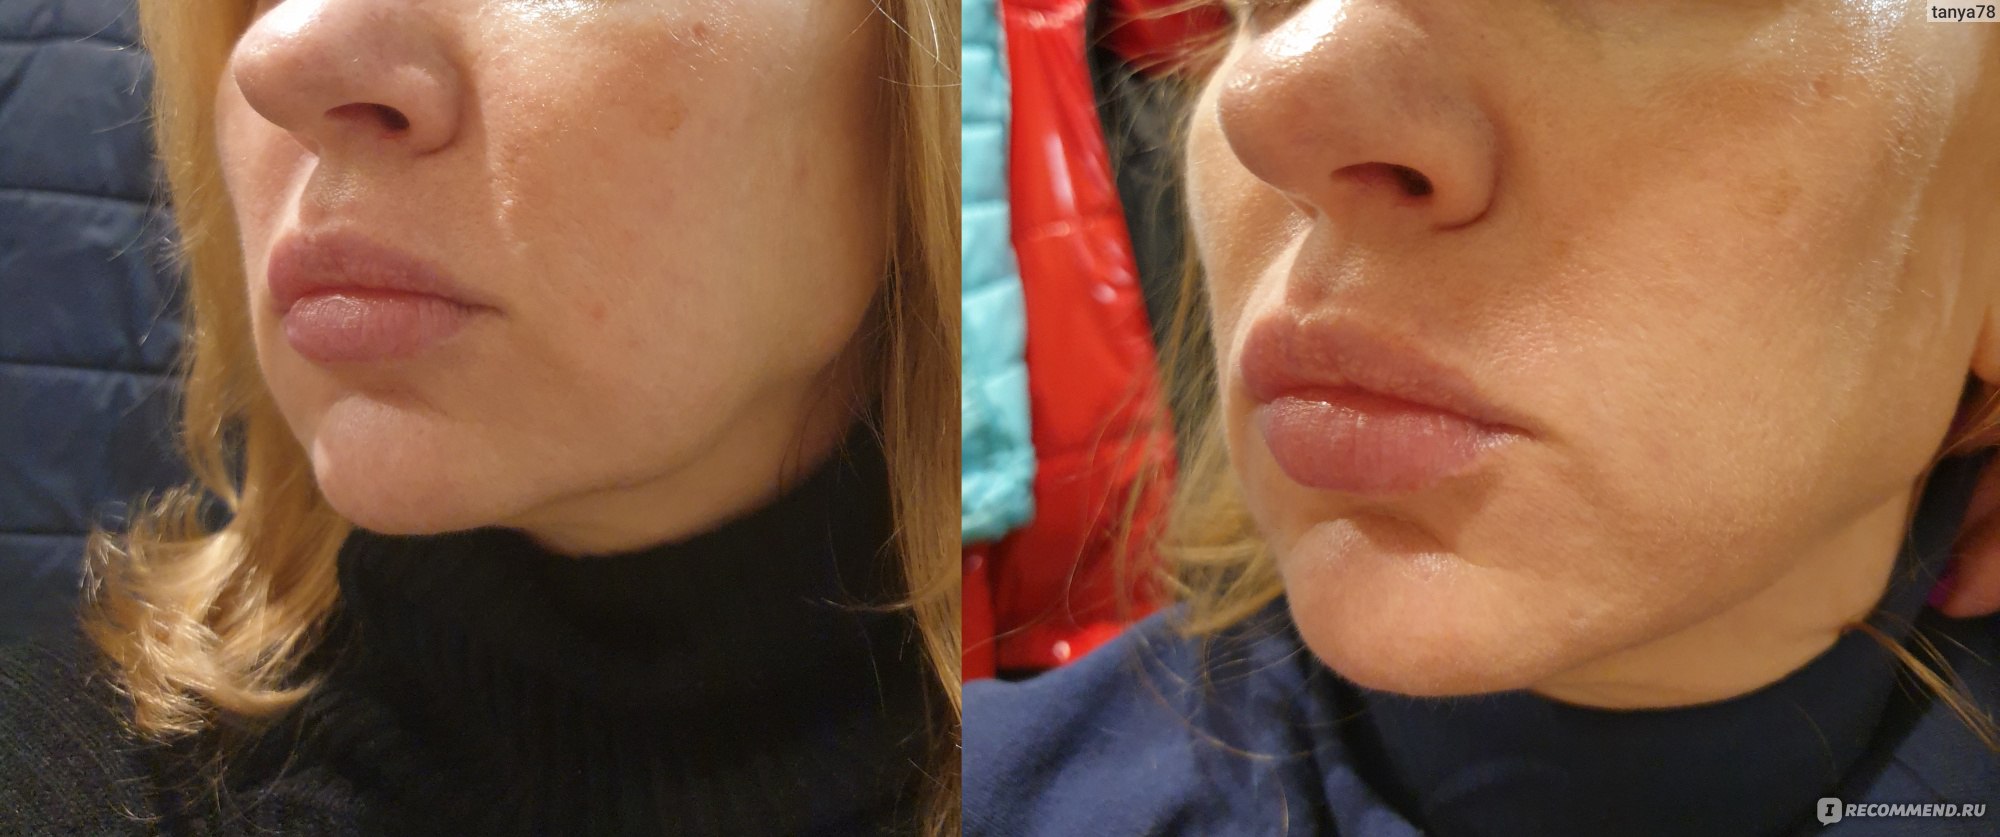 Брыли на лице фото до и после липолитики для лица щеки